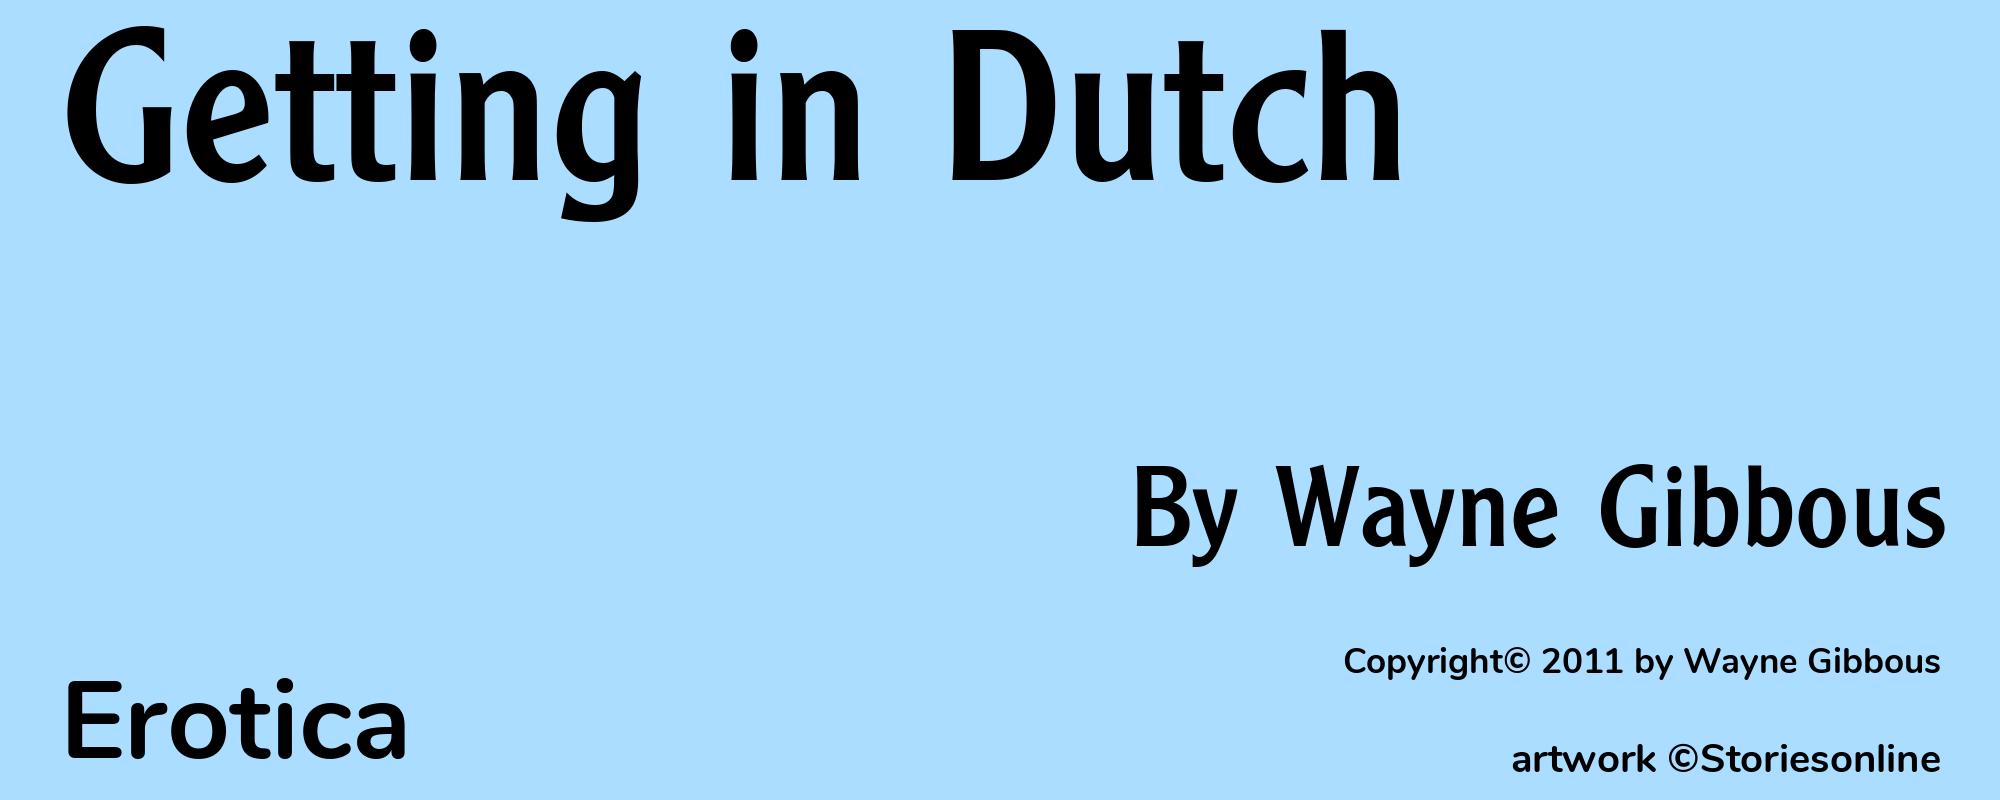 Getting in Dutch - Cover